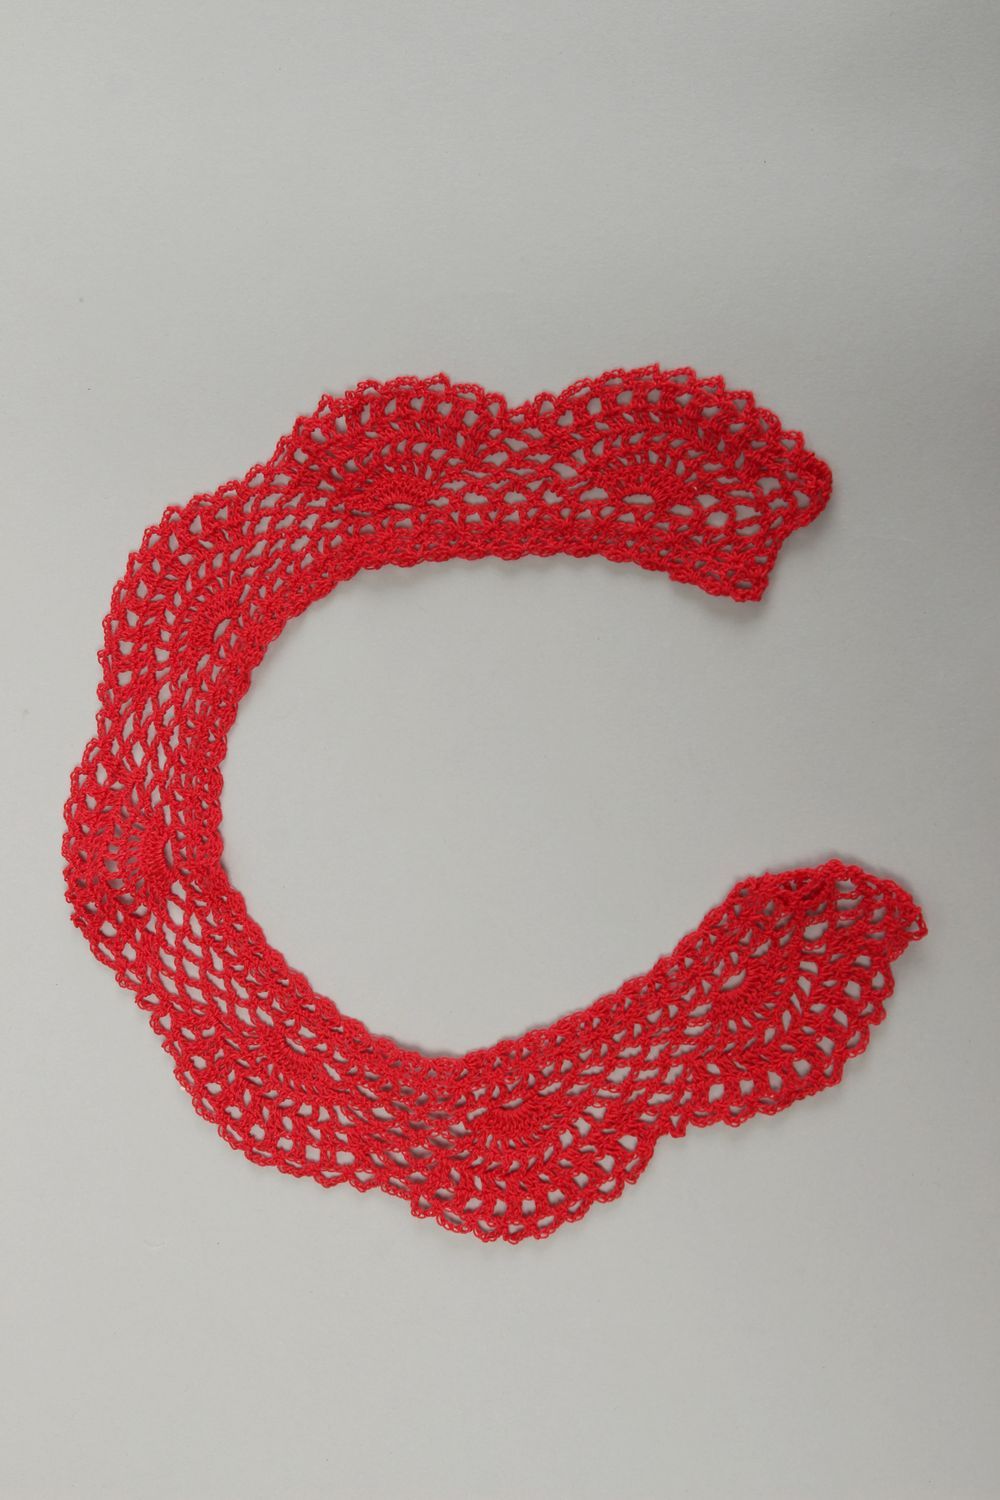 Col tricoté fait main Bijou original rouge Accessoires tricot rouge design photo 2